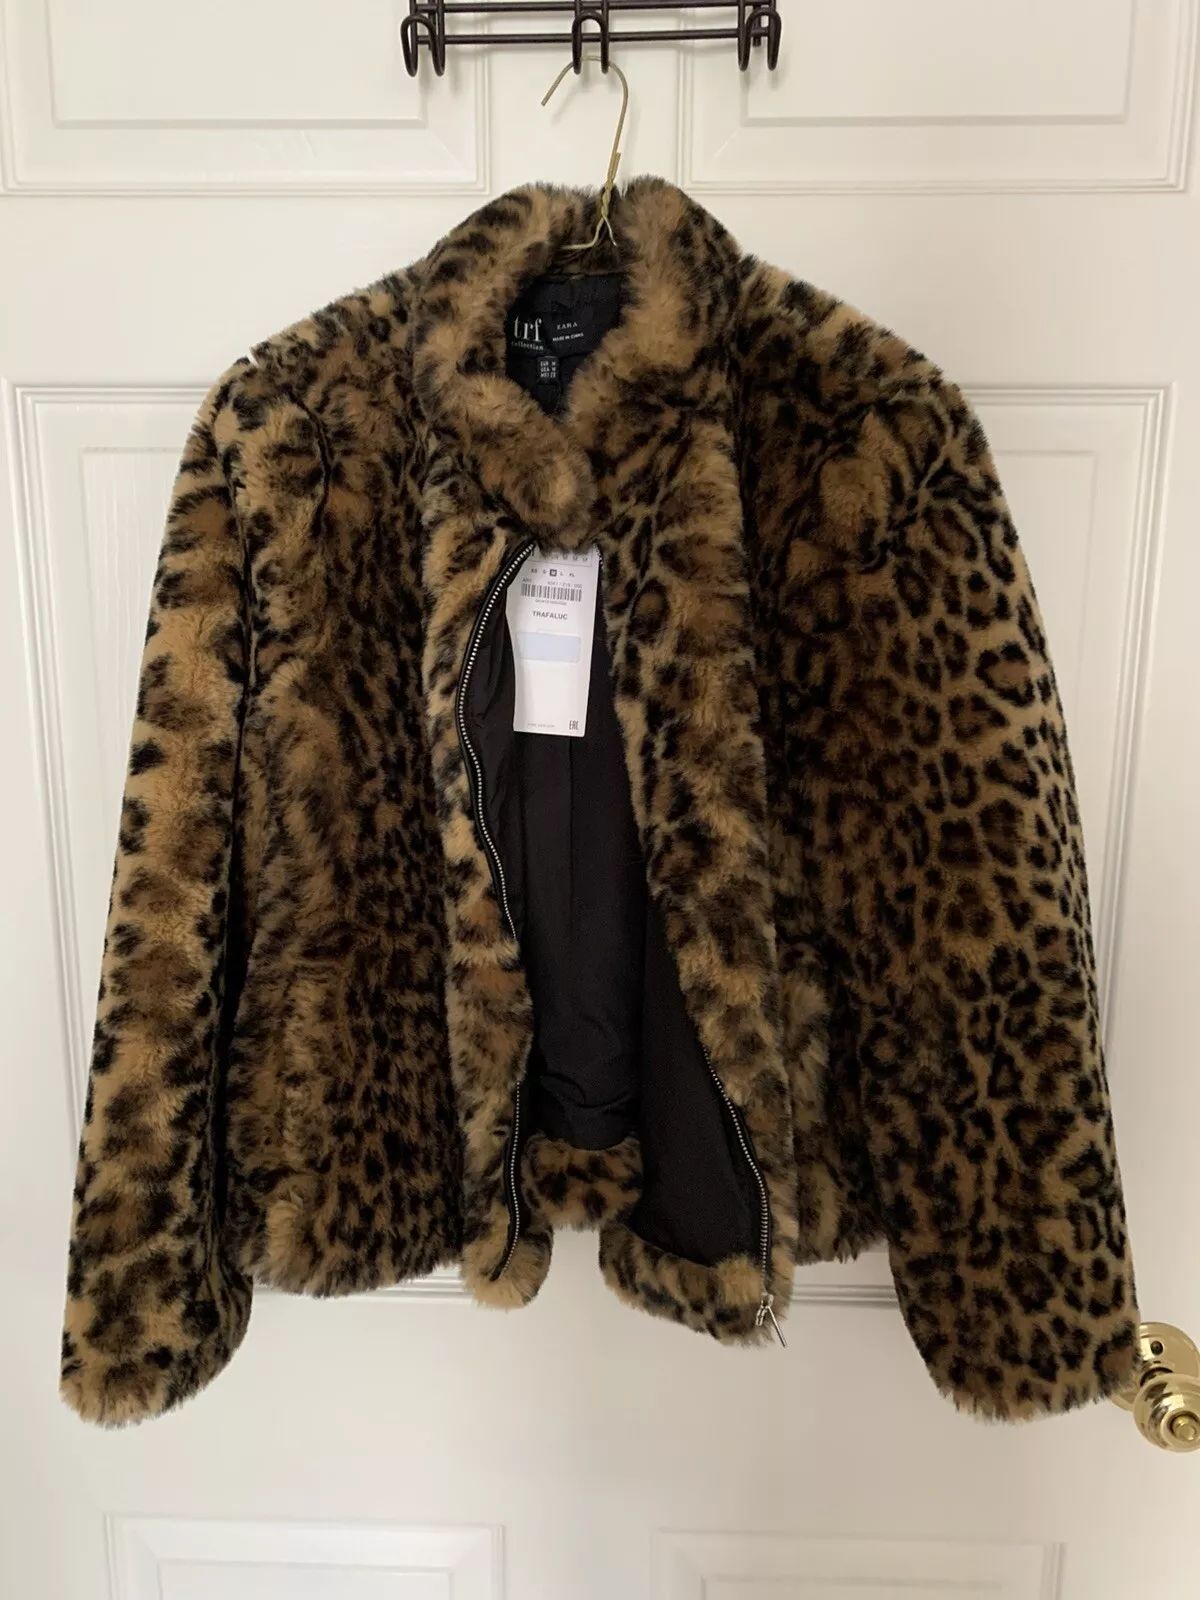 Zara Faux Fur Coat Leopard Print Size Medium Women | eBay CA